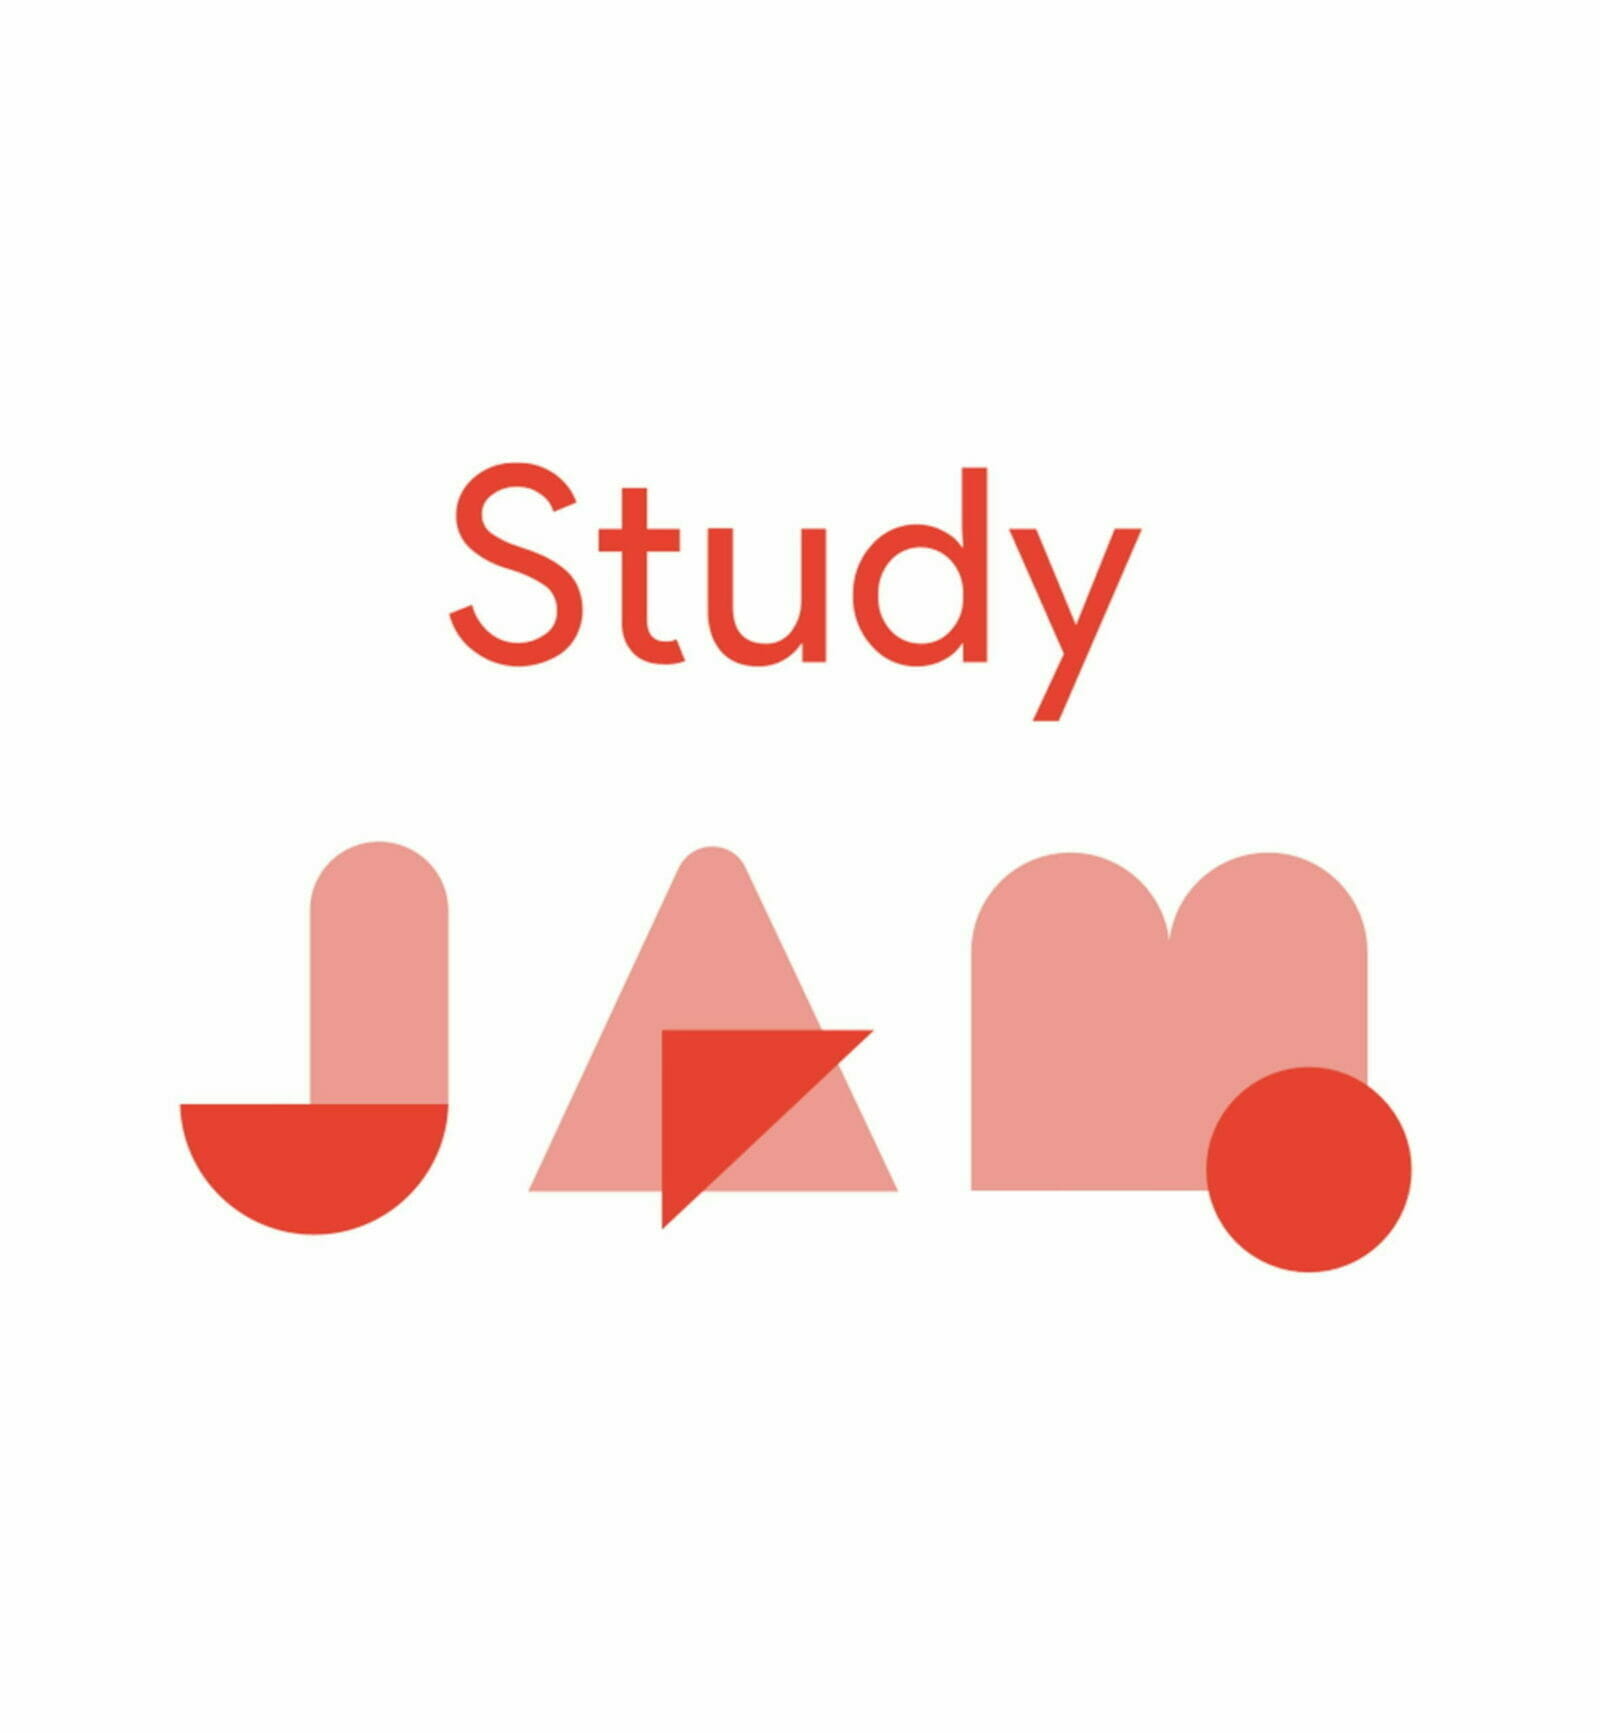 [GCP] Cloud Study Jam